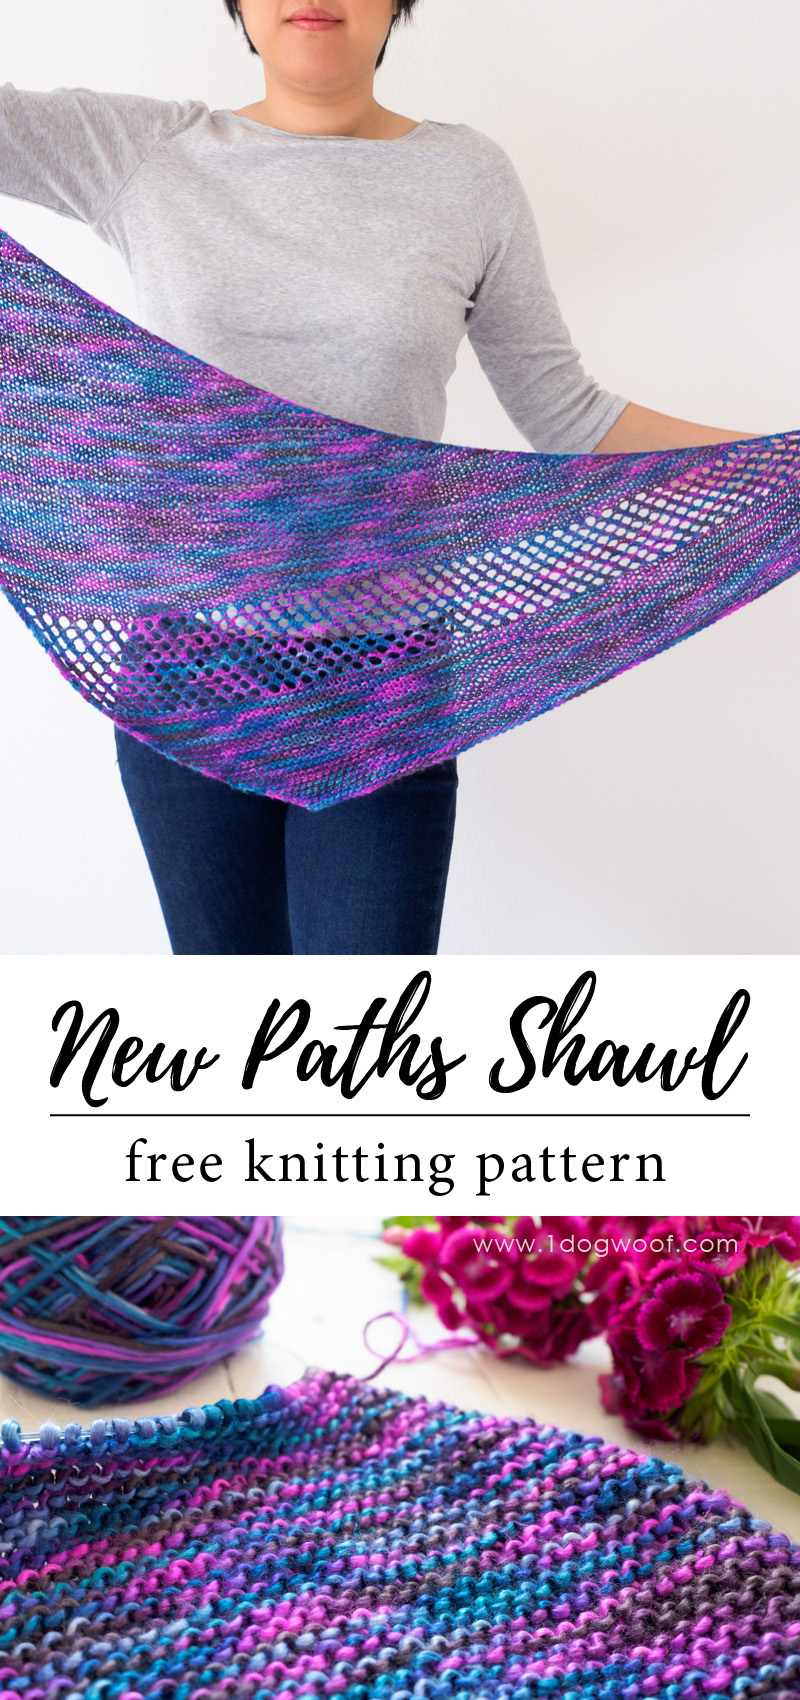 Knitted Shawls Patterns Free New Paths Shawl Free Knitting Pattern One Dog Woof